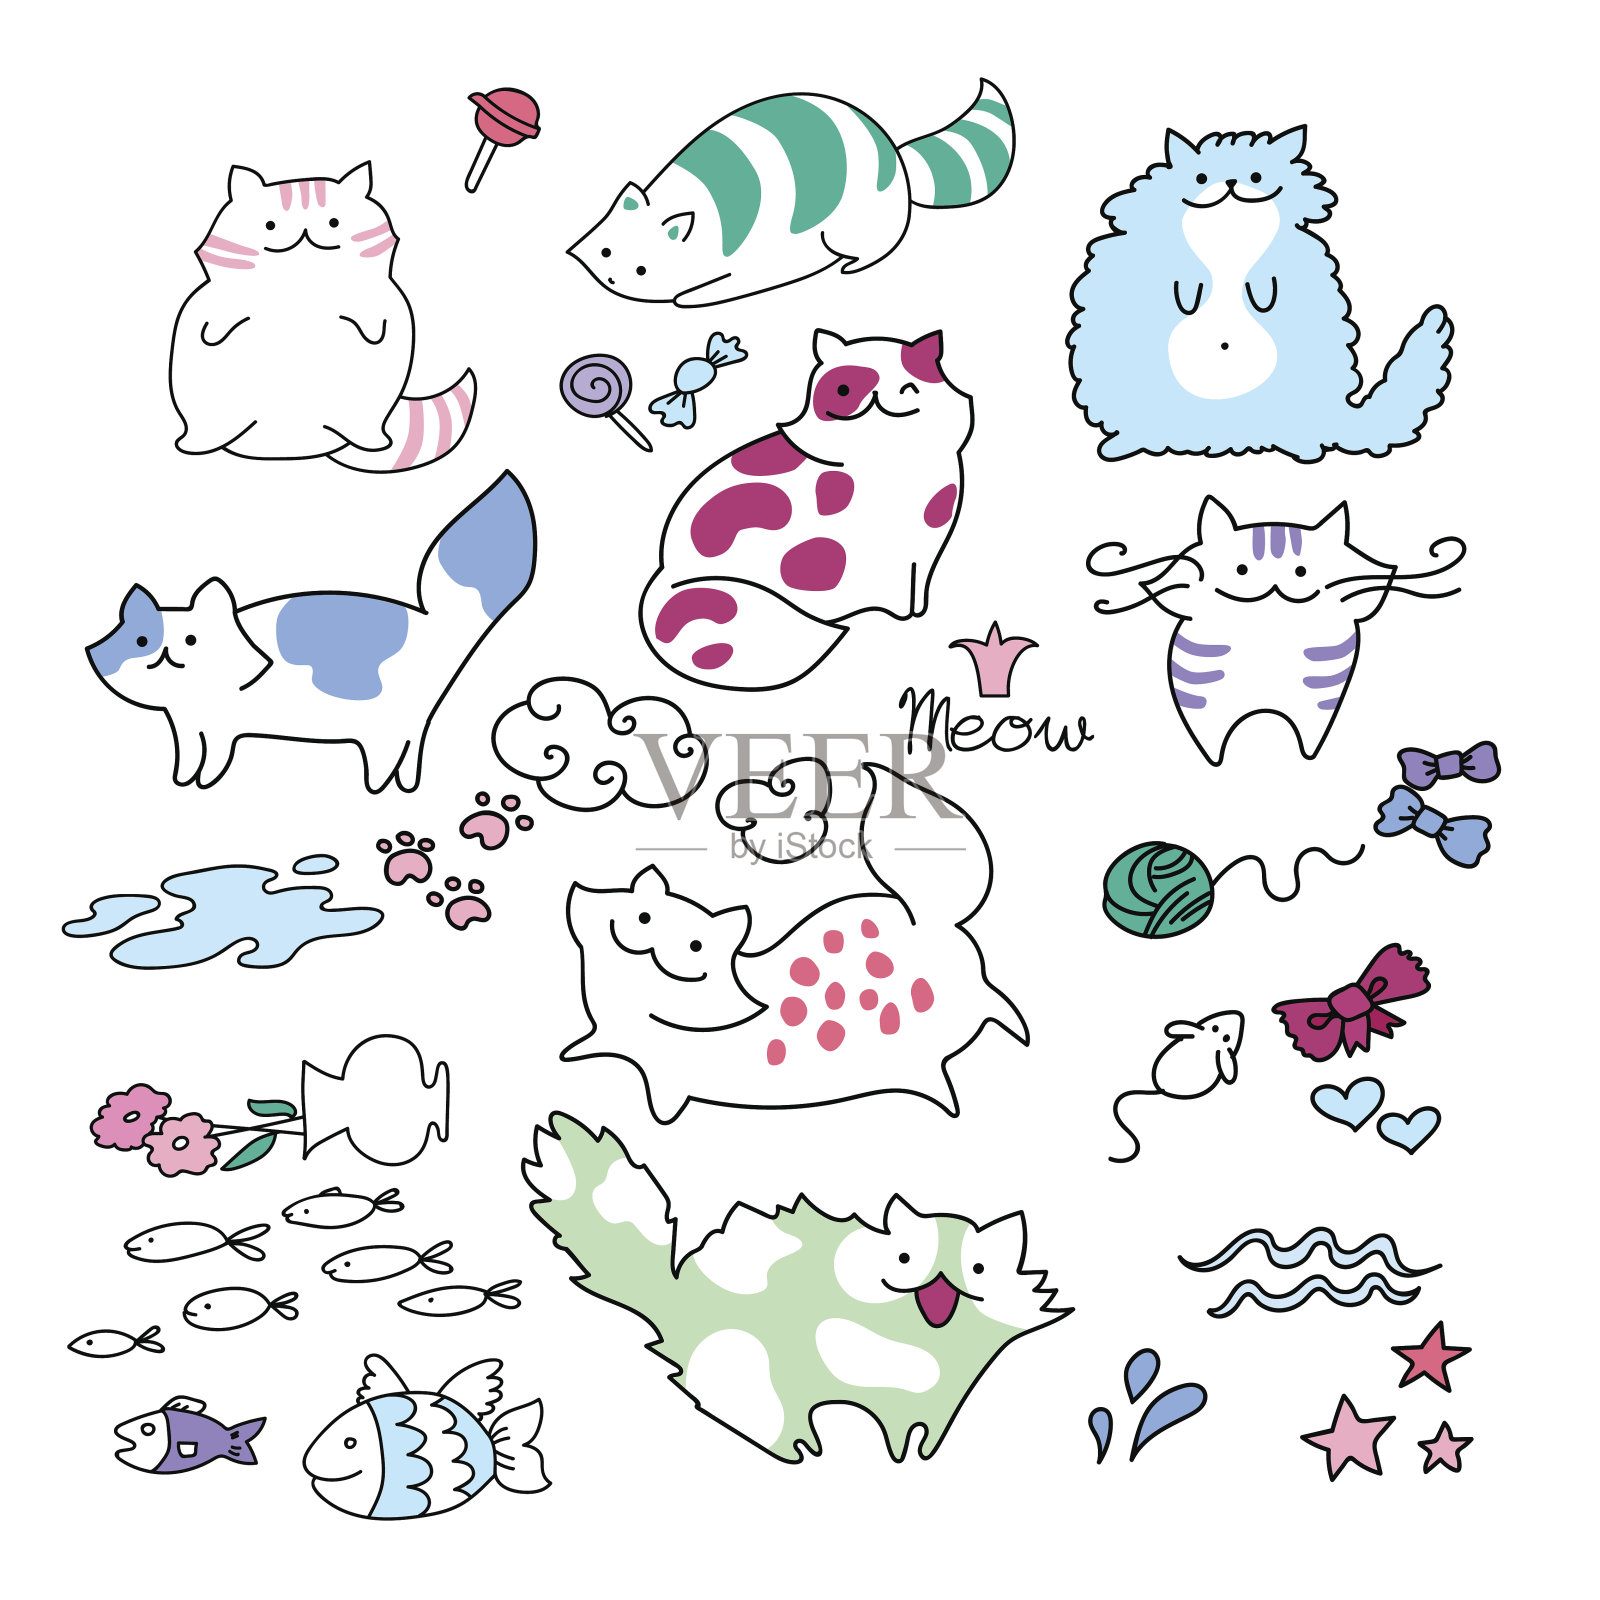 有趣的玩可爱的孩子猫矢量插图集。可以在明信片、贺卡、印刷品、海报广告和网页设计中涂鸦彩色可爱的小猫和鱼。快乐可爱的小猫与喵的文字插画图片素材